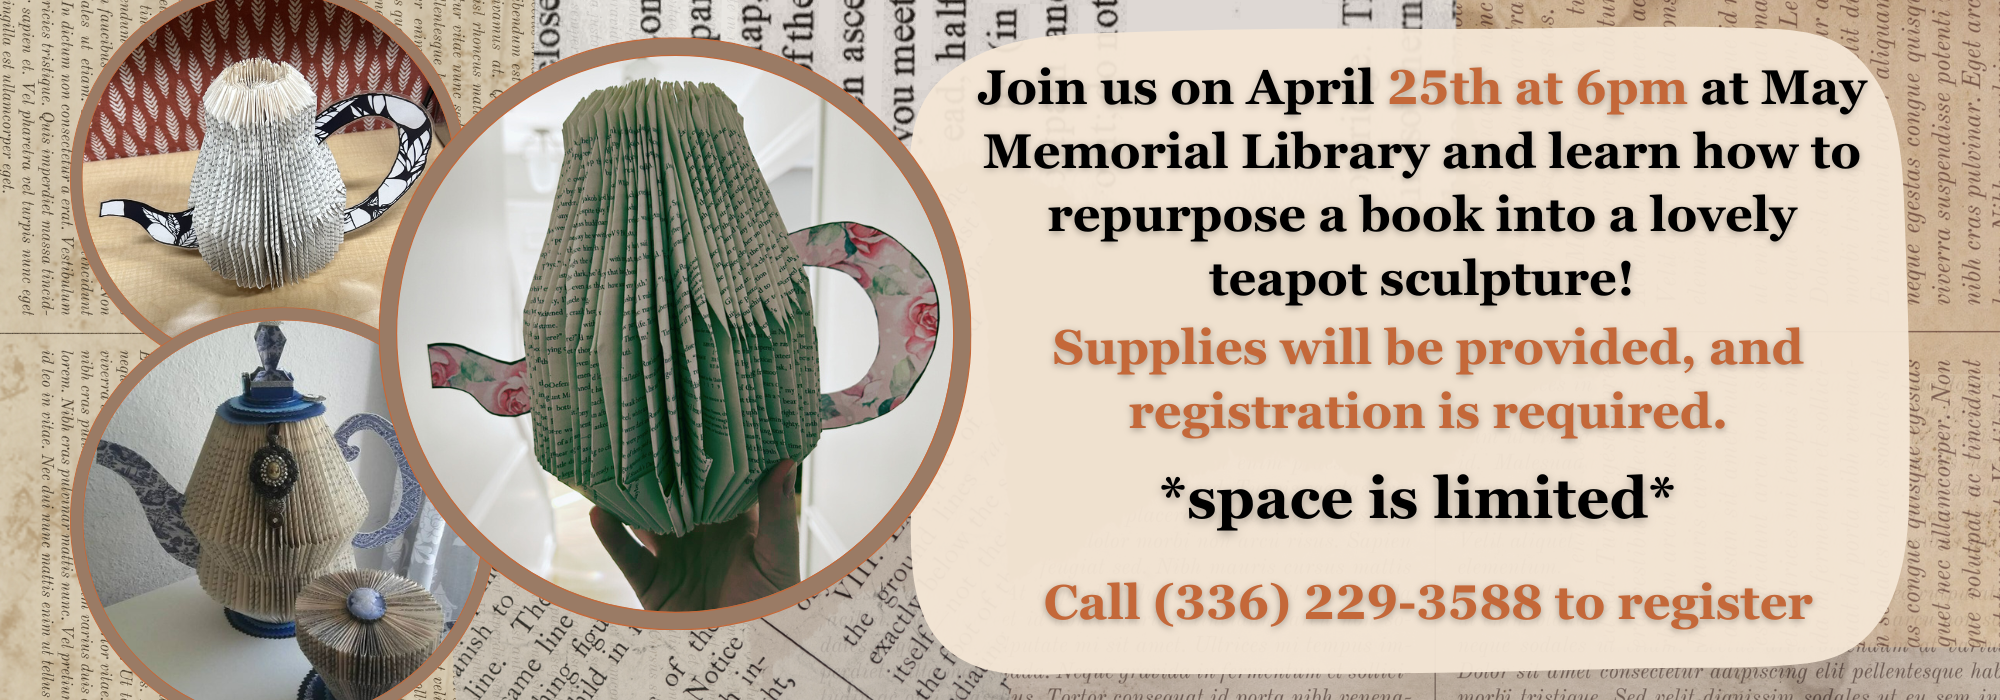 4.24 at 6 pm - Book Folding Craft at May Memorial